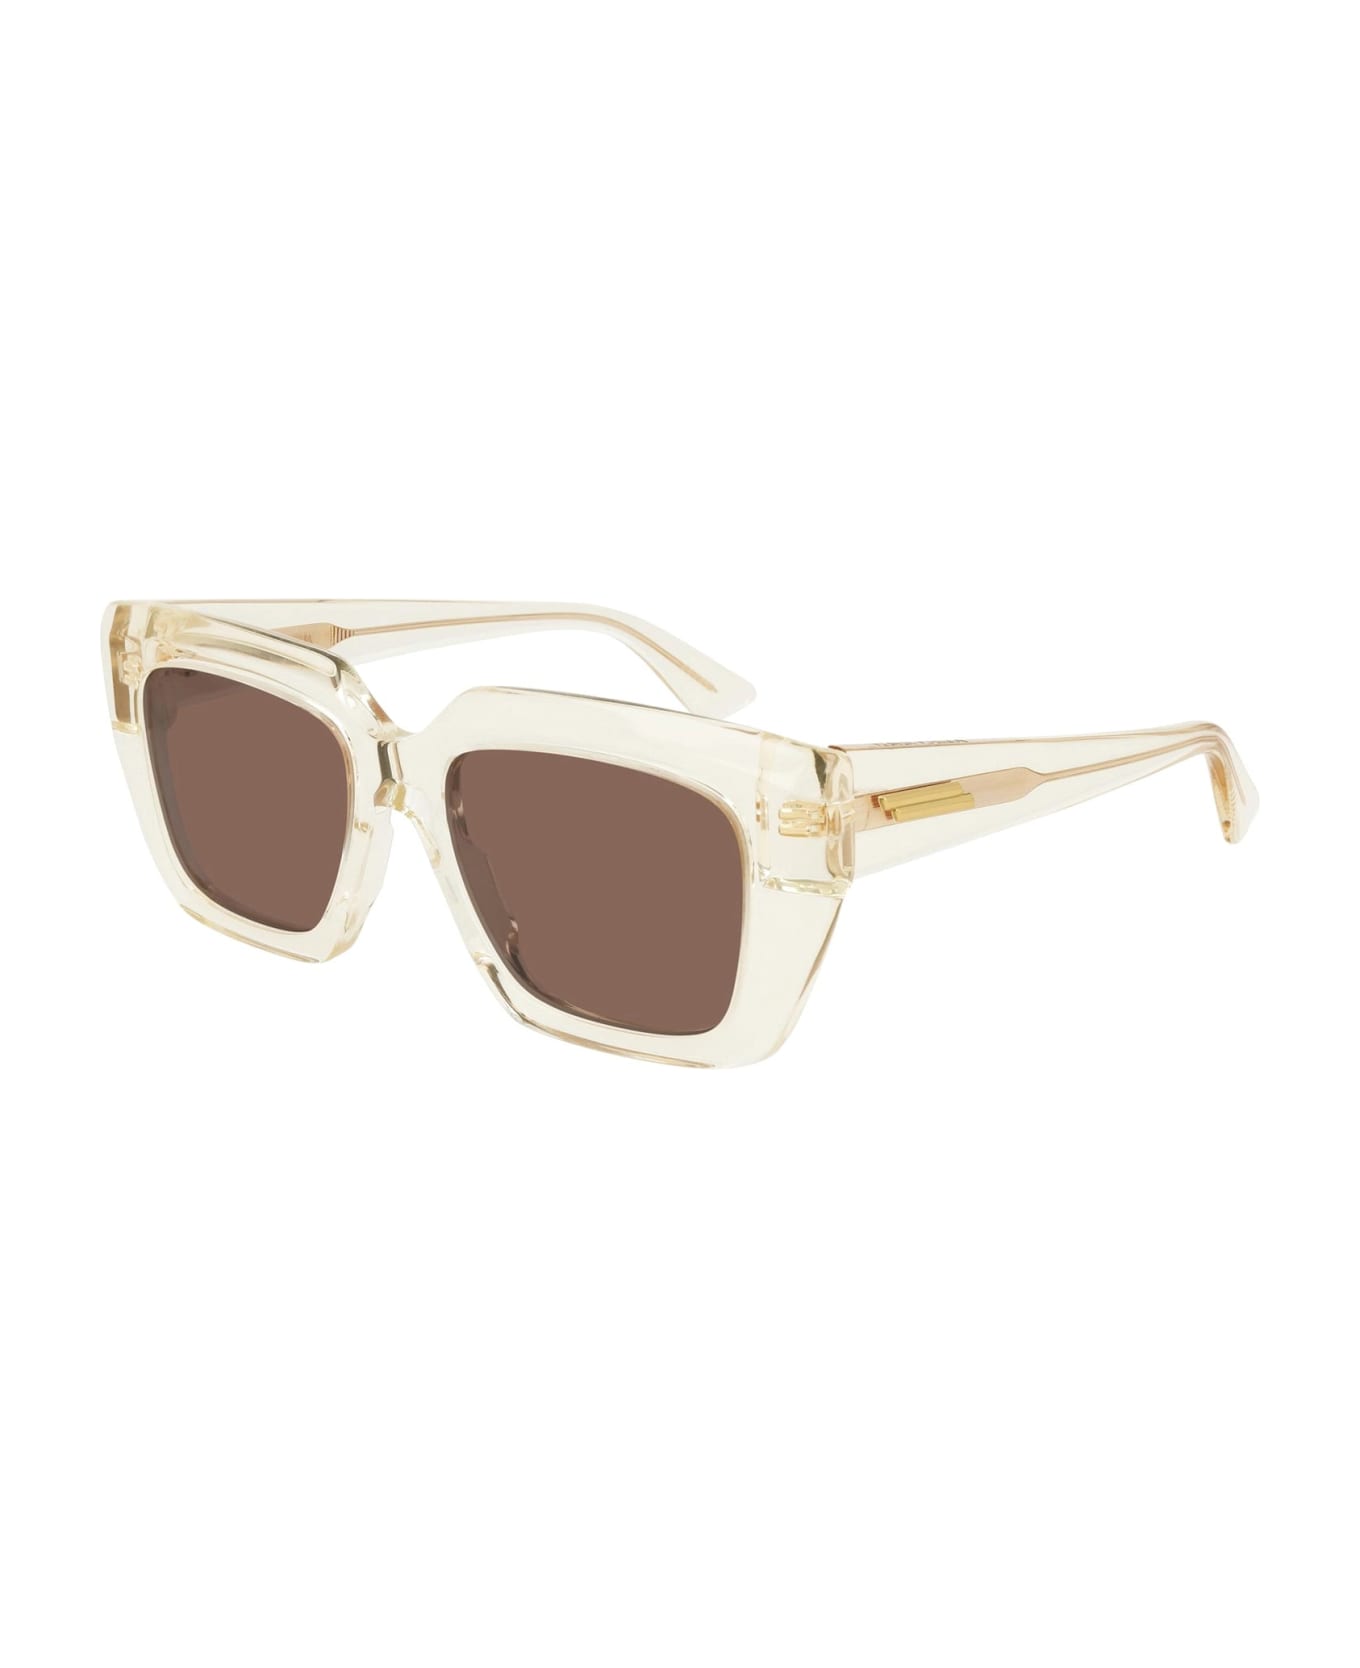 Bottega Veneta Eyewear Bv1030s-004 - Beige Sunglasses - beige